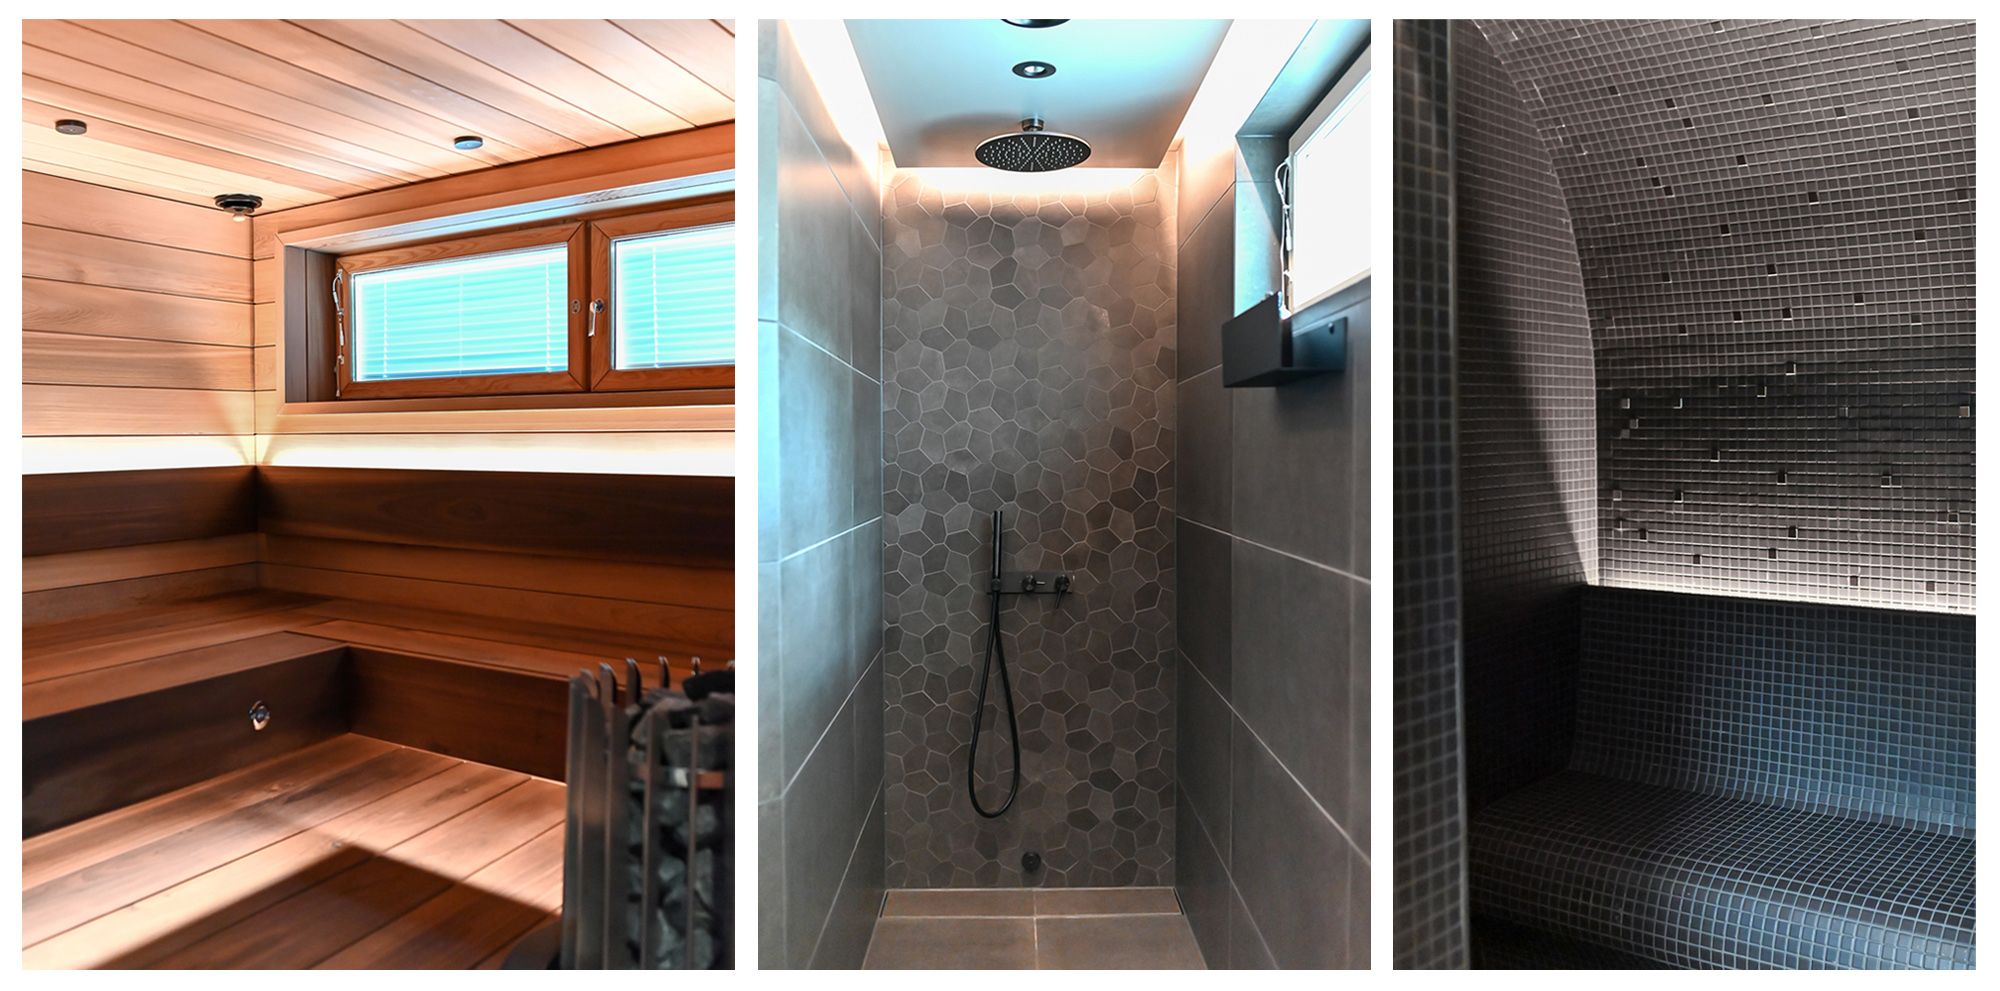 En totalrenovering av dusch- och basturummen, med tejper för att skapa en ny atmosfär. Foton.